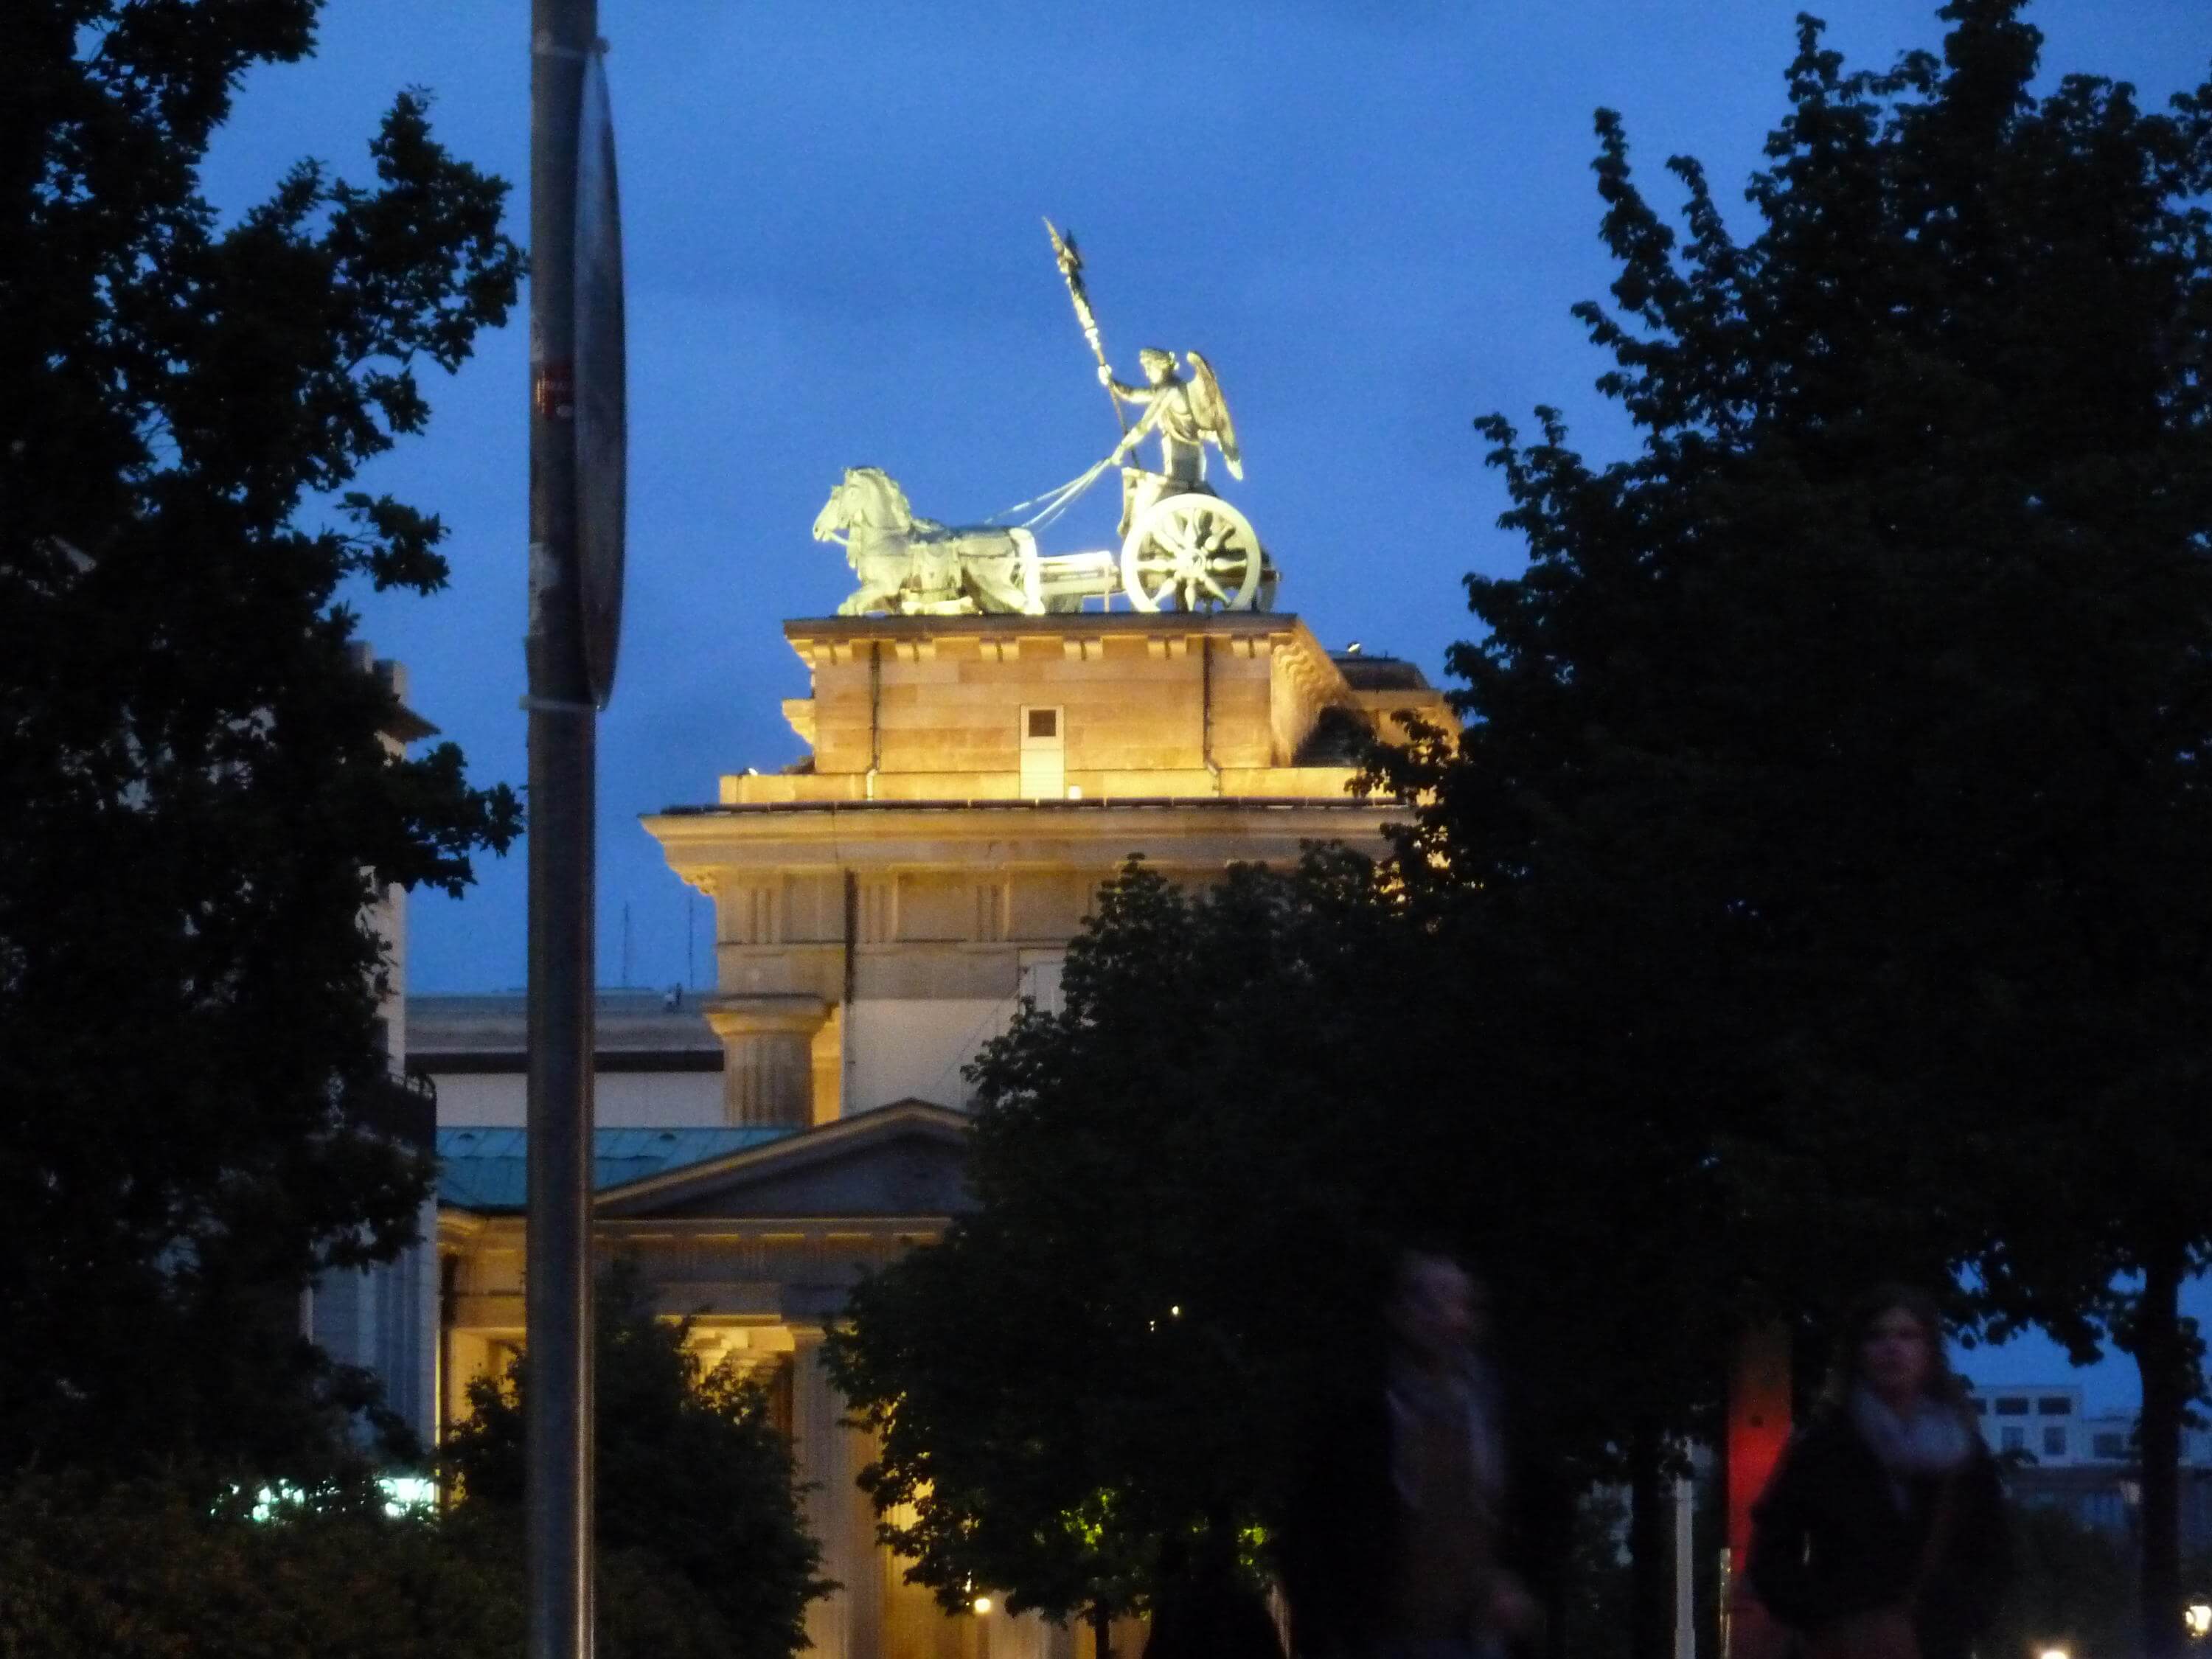 Brandenburger gate lit up at night